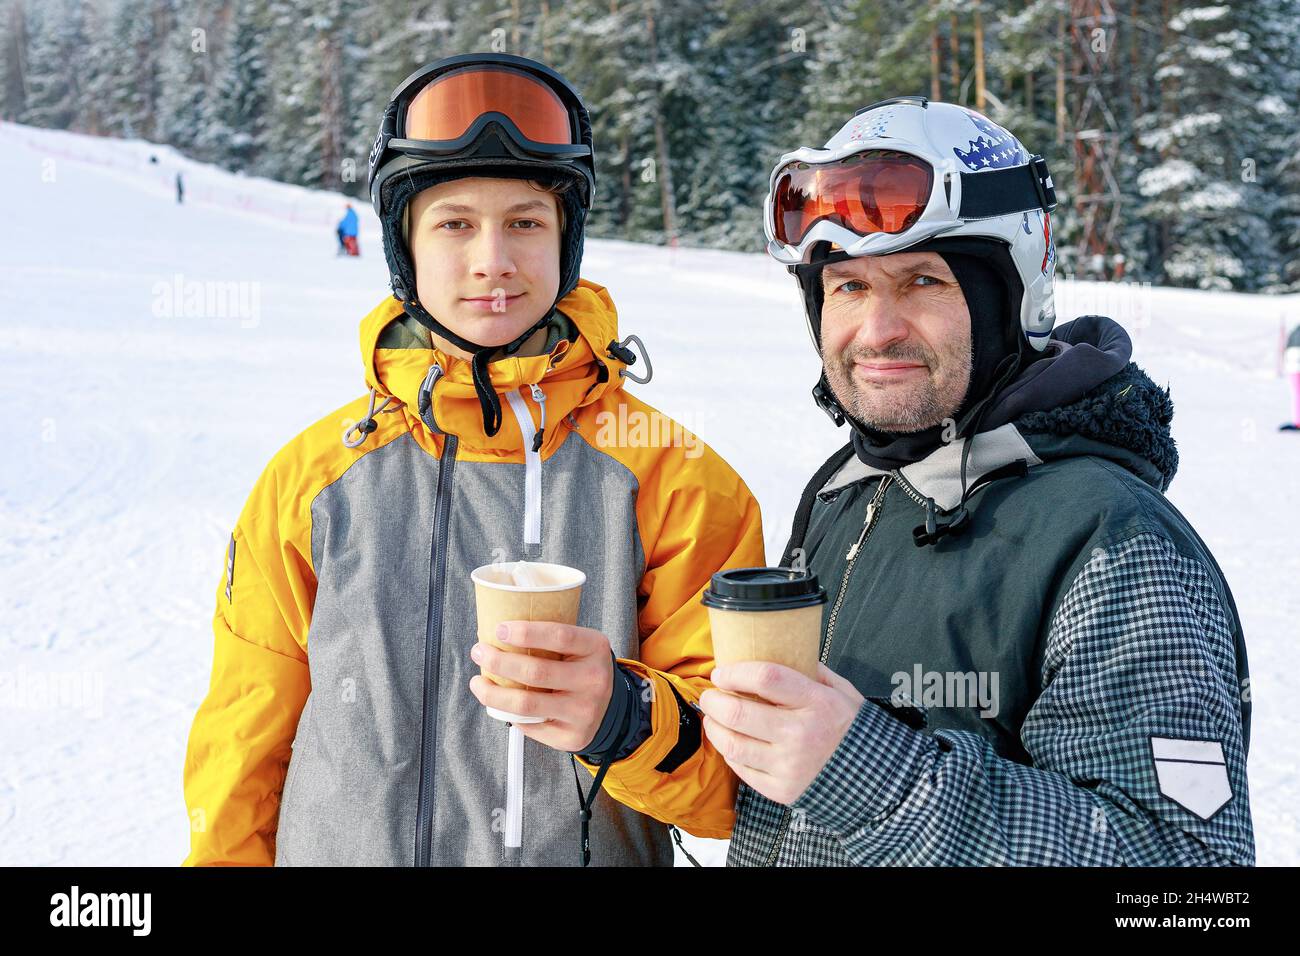 Deux snowboarders de différents âges boivent du café chaud.Arrière-plan des pistes de ski.Le père et le fils de race blanche sont engagés dans la spo extrême d'hiver Banque D'Images